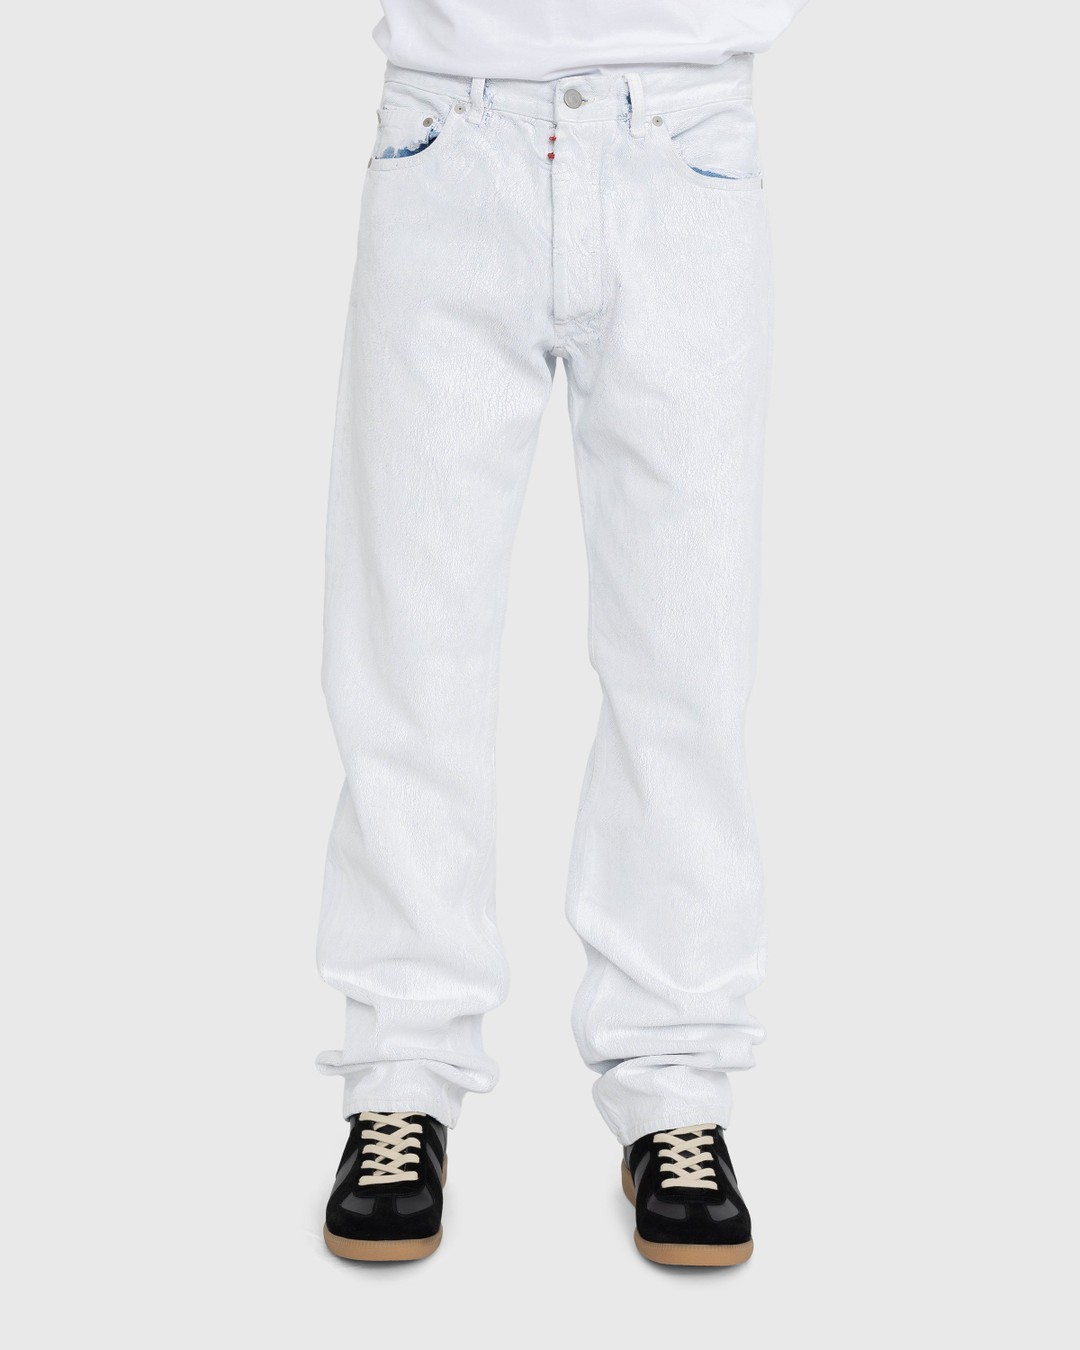 Maison Margiela – 5-Pocket Paint Jeans White - Pants - White - Image 2